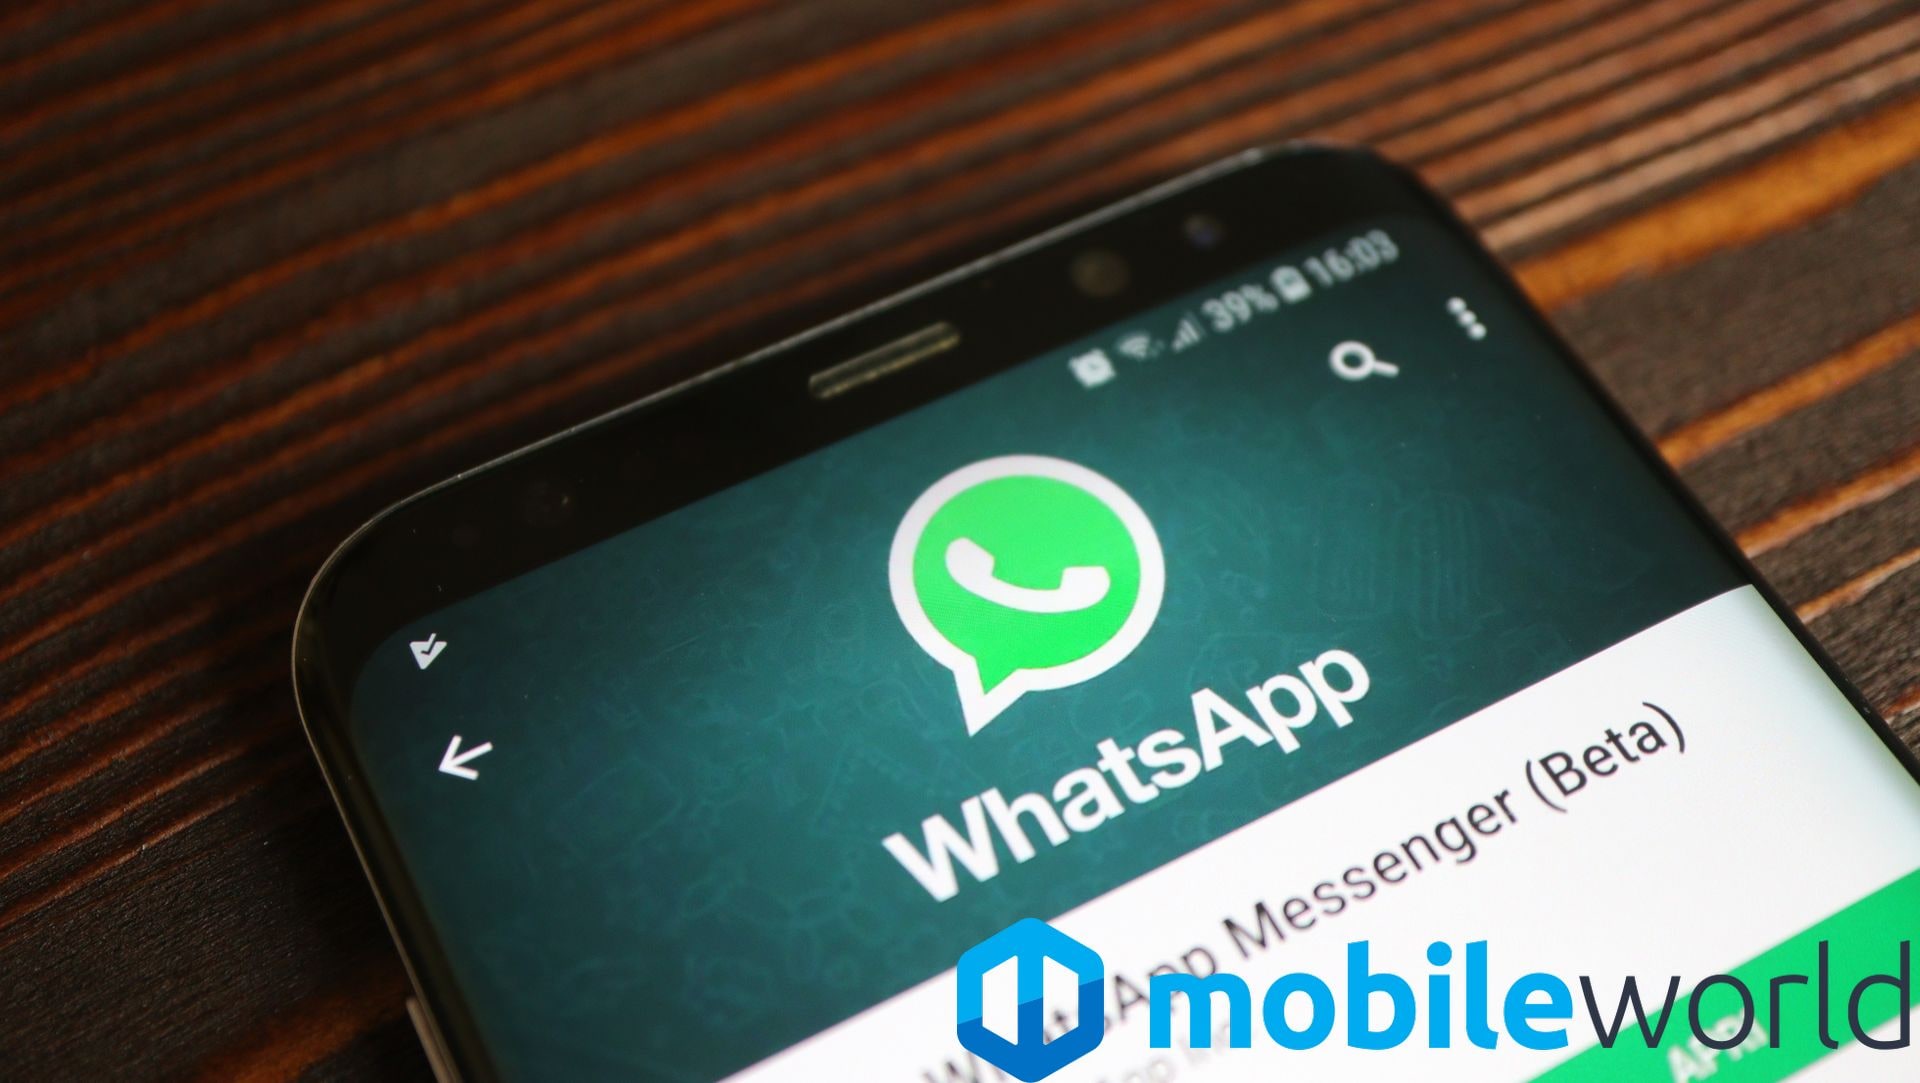 Stati condivisibili su Facebook e QR Code personale: queste le novità principali di WhatsApp beta (foto)